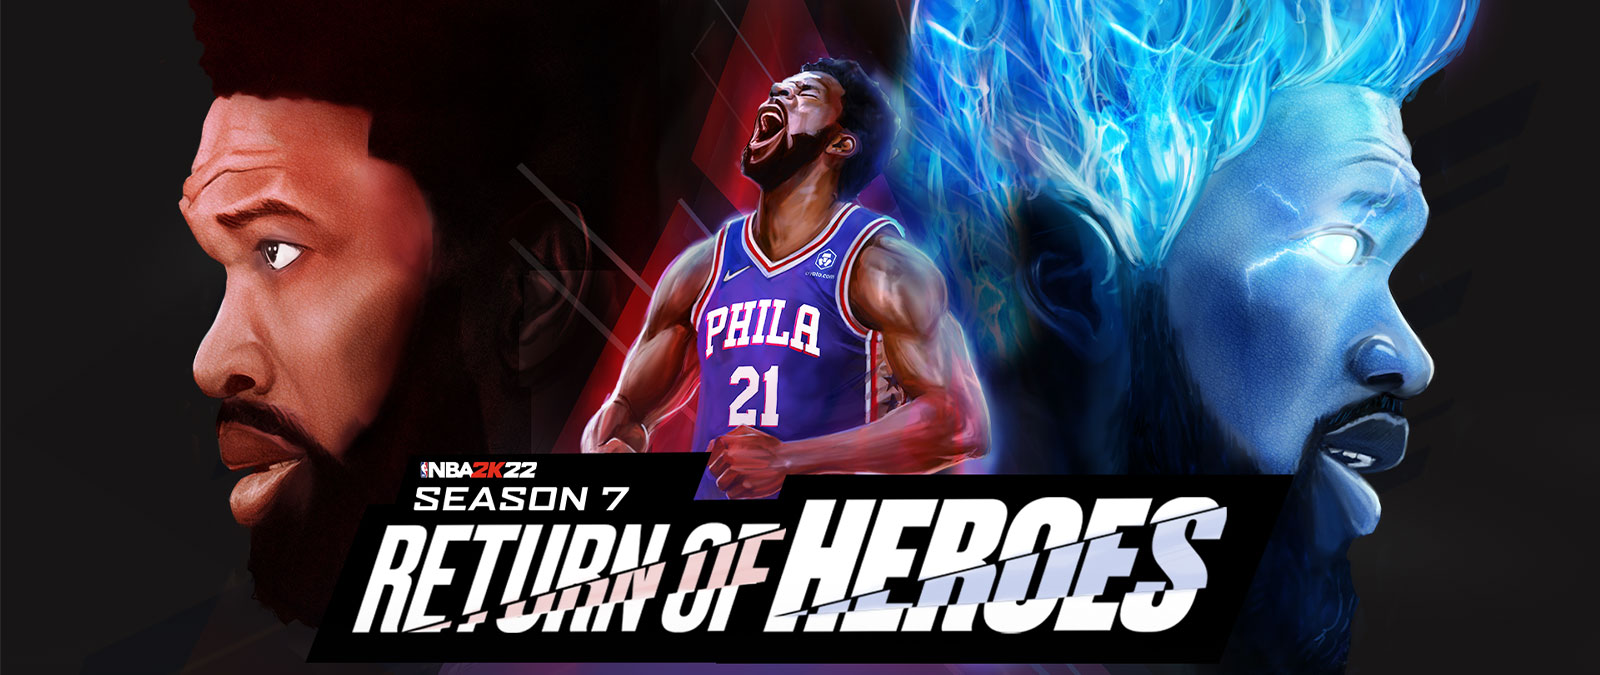 NBA 2K22, Temporada 7, Return of Heros, un jugador de Filadelfia lanza un grito al cielo y reúne su poder con llamas azules.